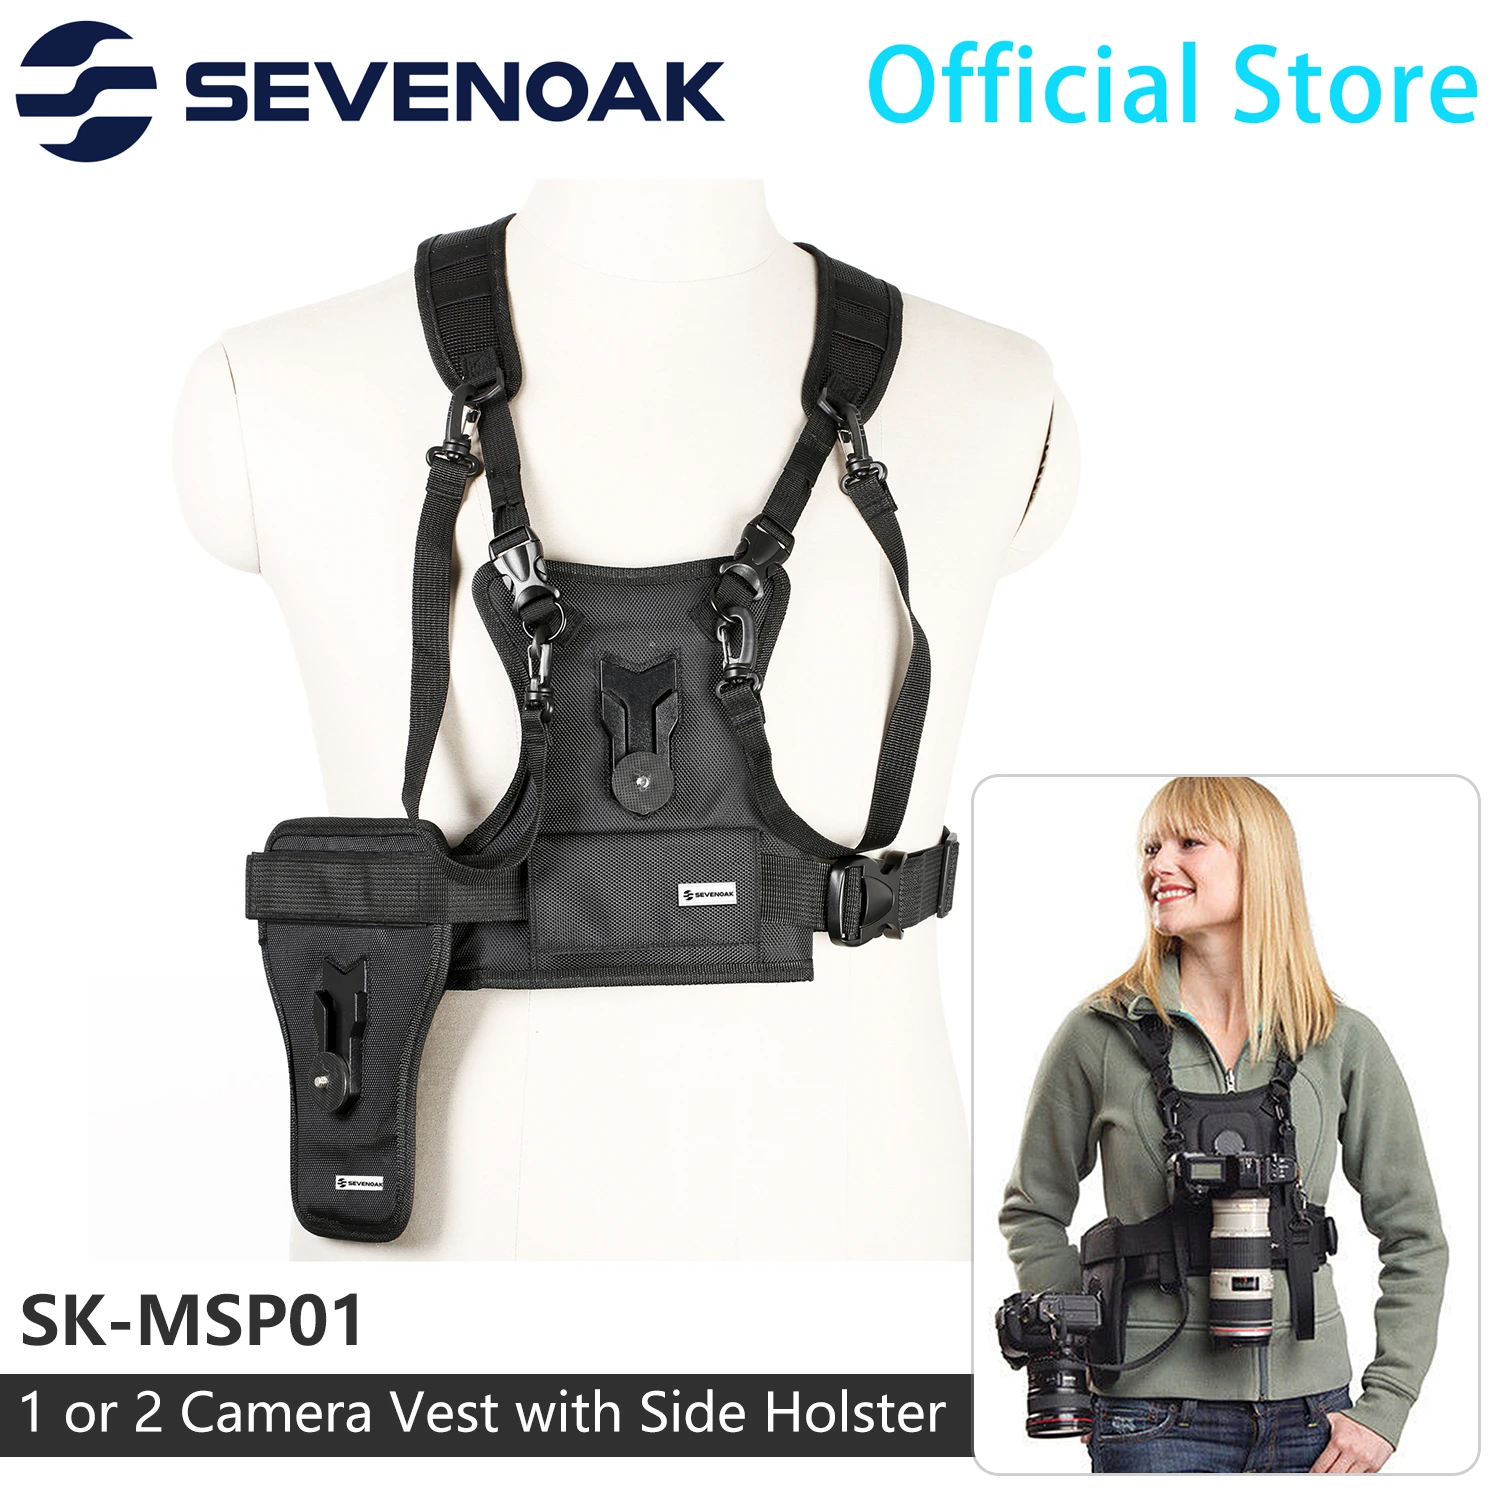 Sevenoak SK-MSP01 Double Shoulder Quick Release Neck Belt Camera Carrier Photographer Vest Dual Side Holster Strap for DSLRs